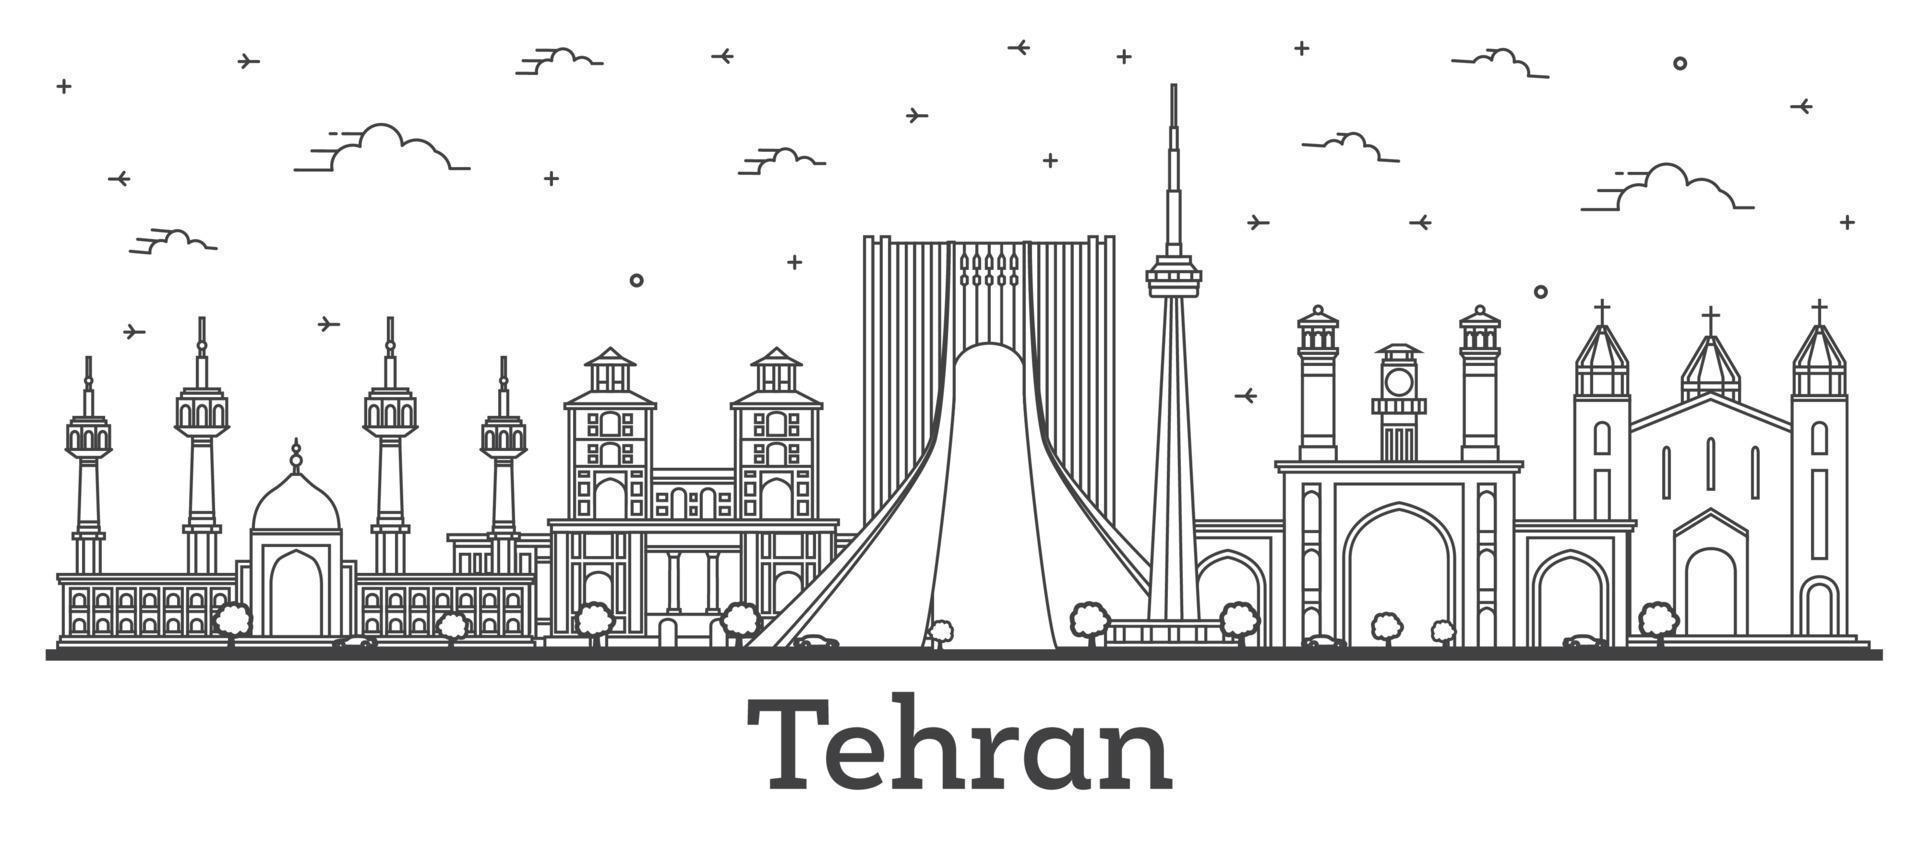 delinear el horizonte de la ciudad de teherán irán con edificios modernos e históricos aislados en blanco. vector